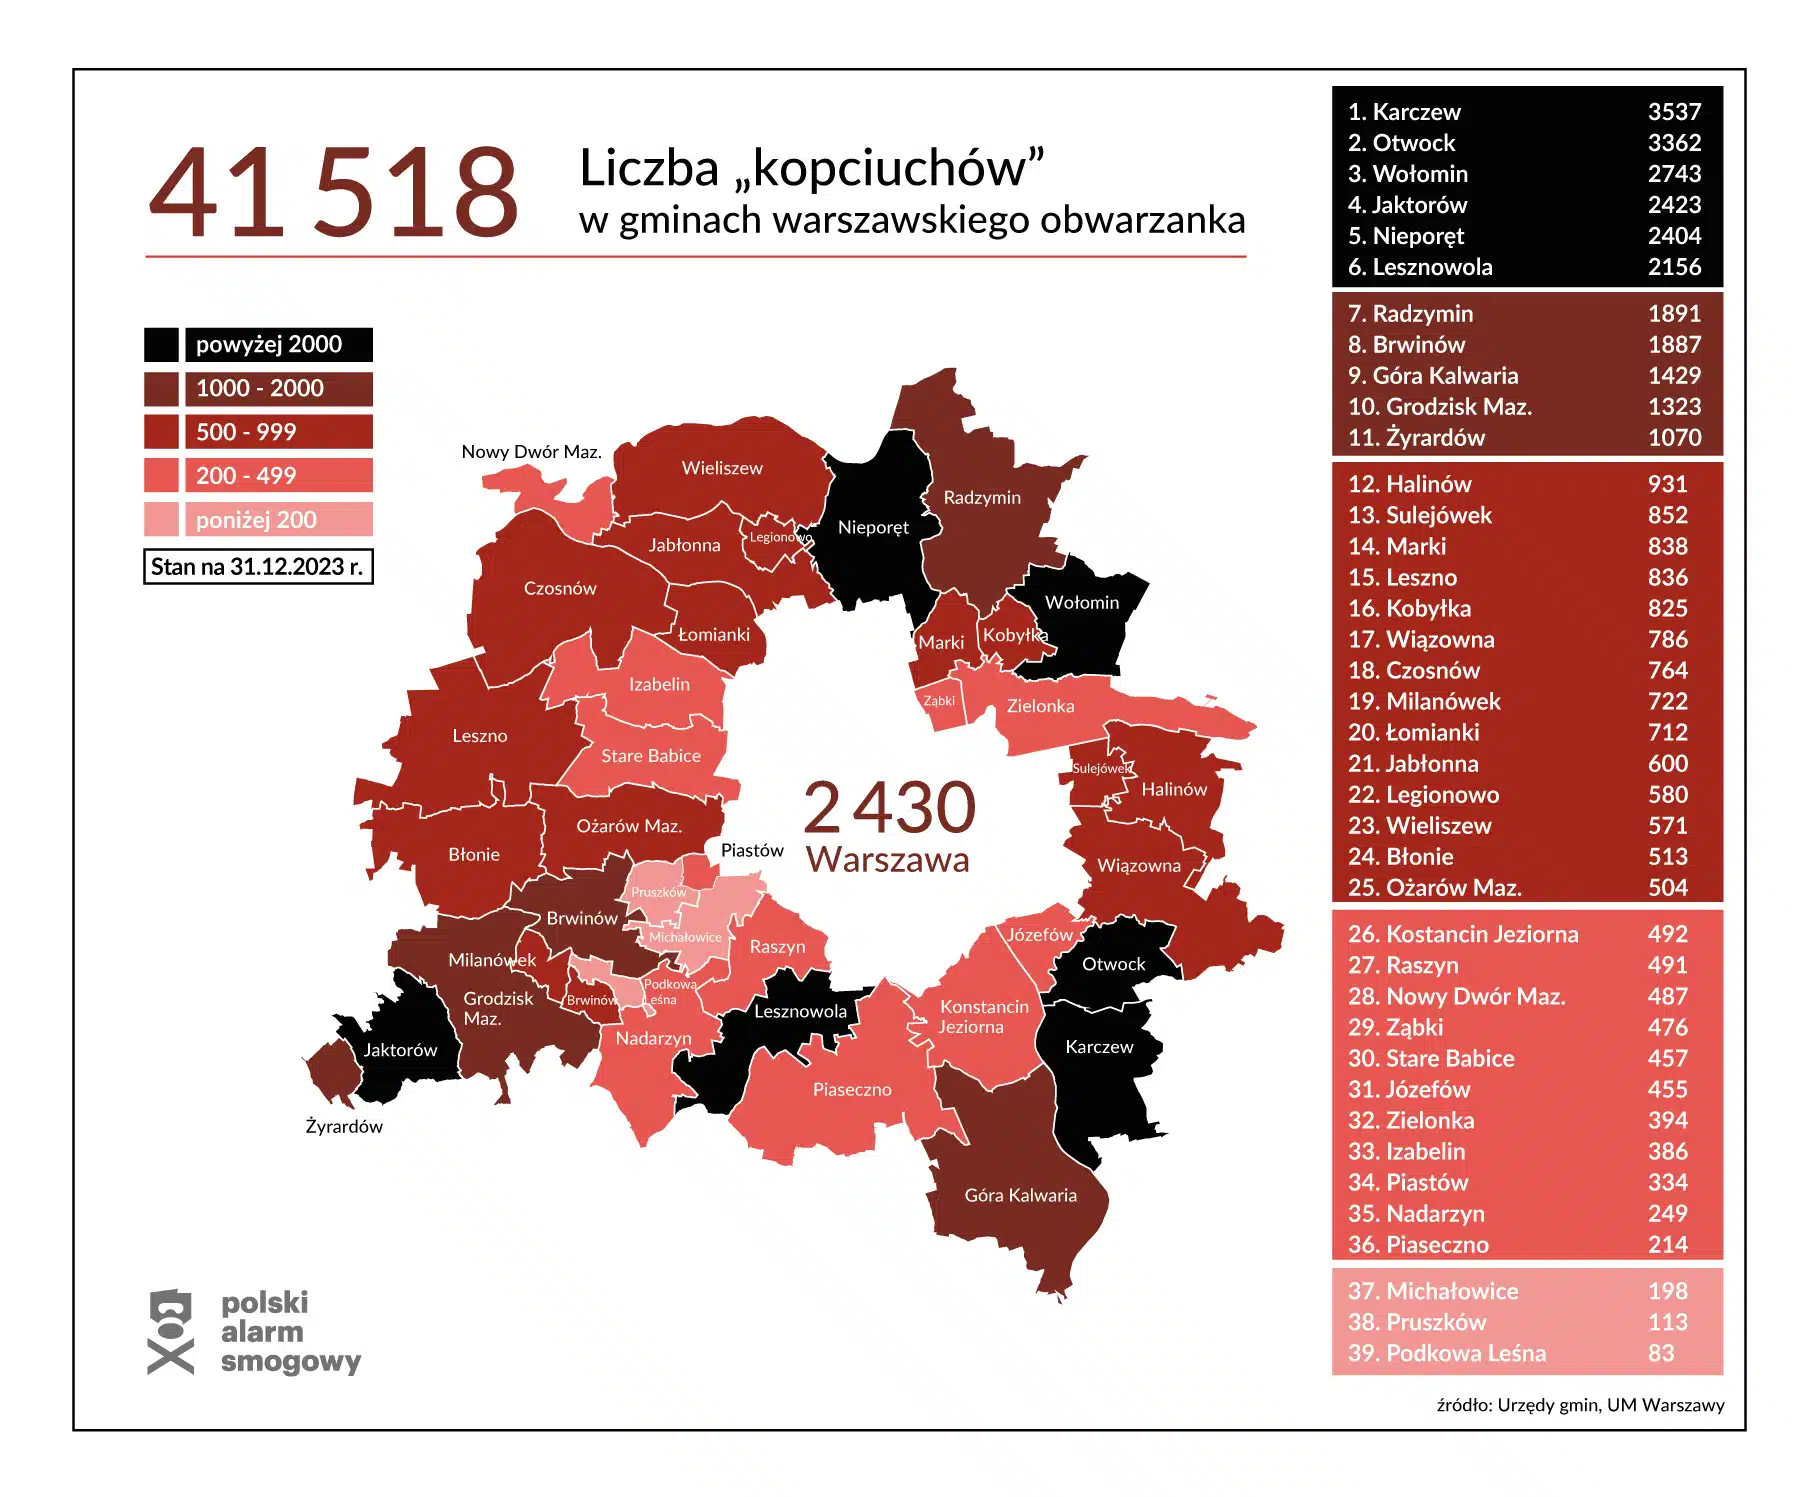 Mapa Warszawy i okolicznych miejscowości z zaznaczoną liczbą nielegalnych kotłów.